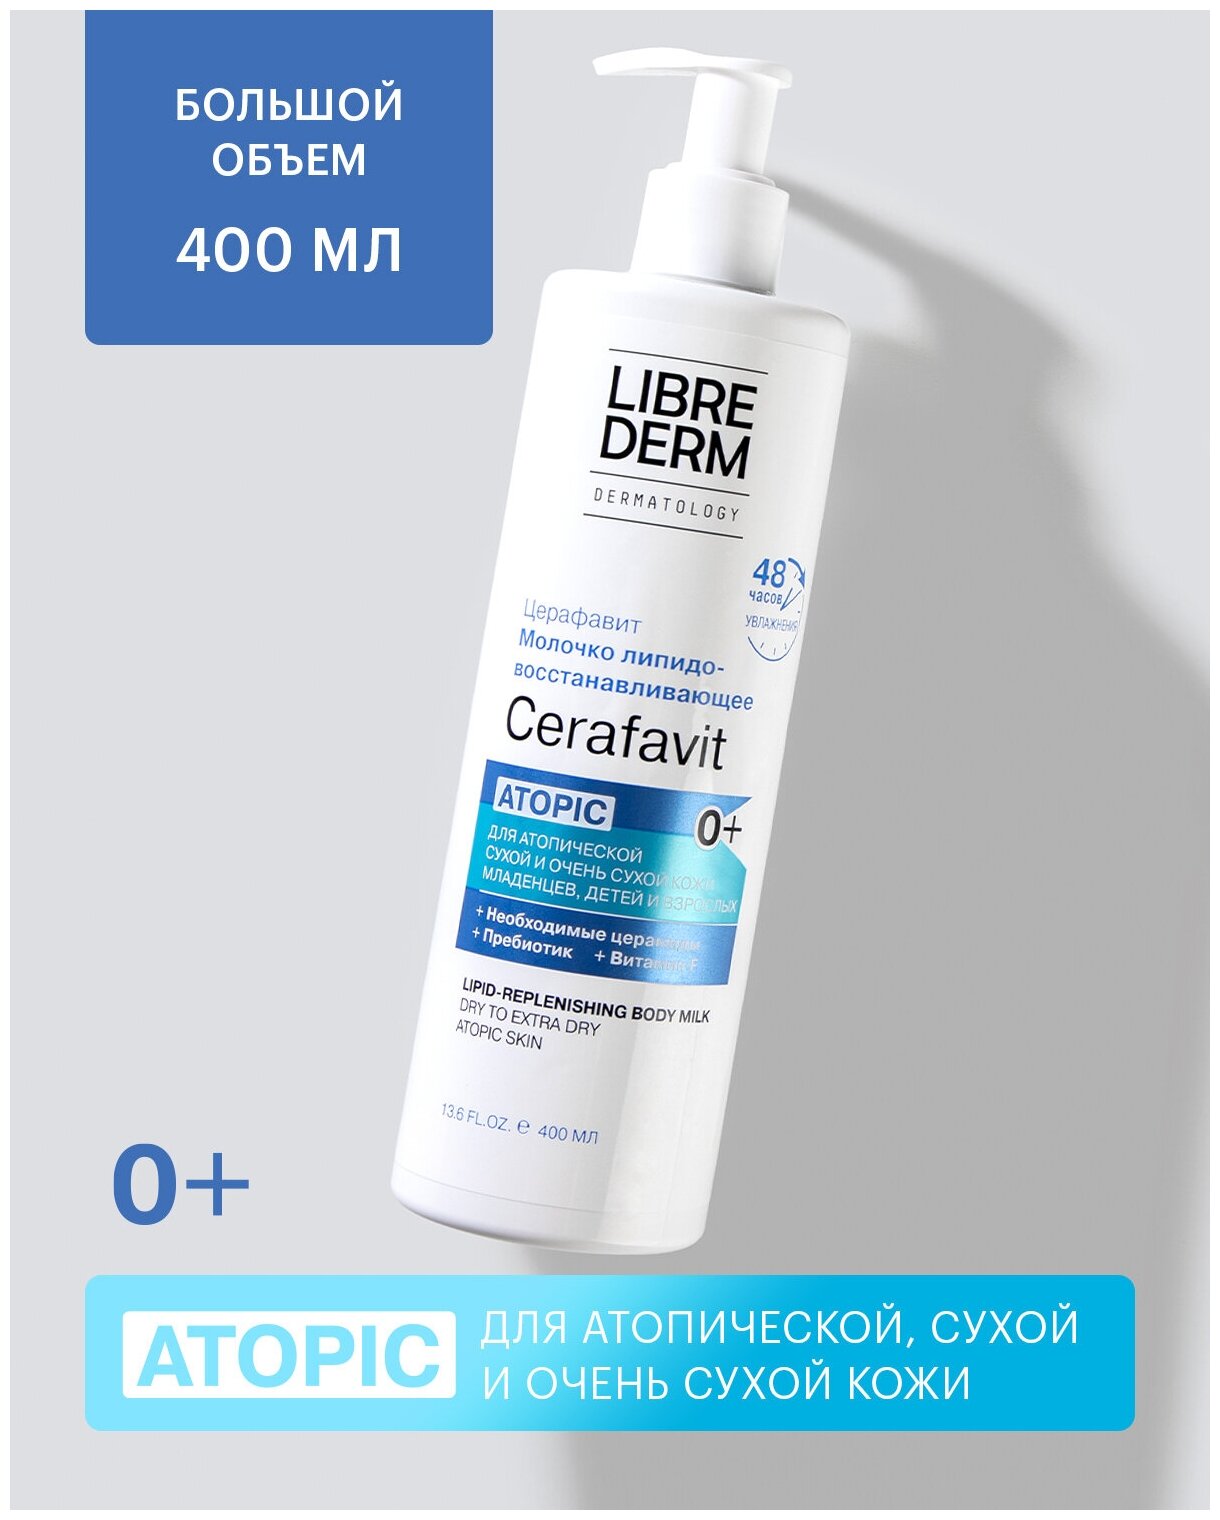 Молочко Librederm Cerafavit для сухой и очень сухой кожи с церамидами и пребиотиком, 400 мл 9404186